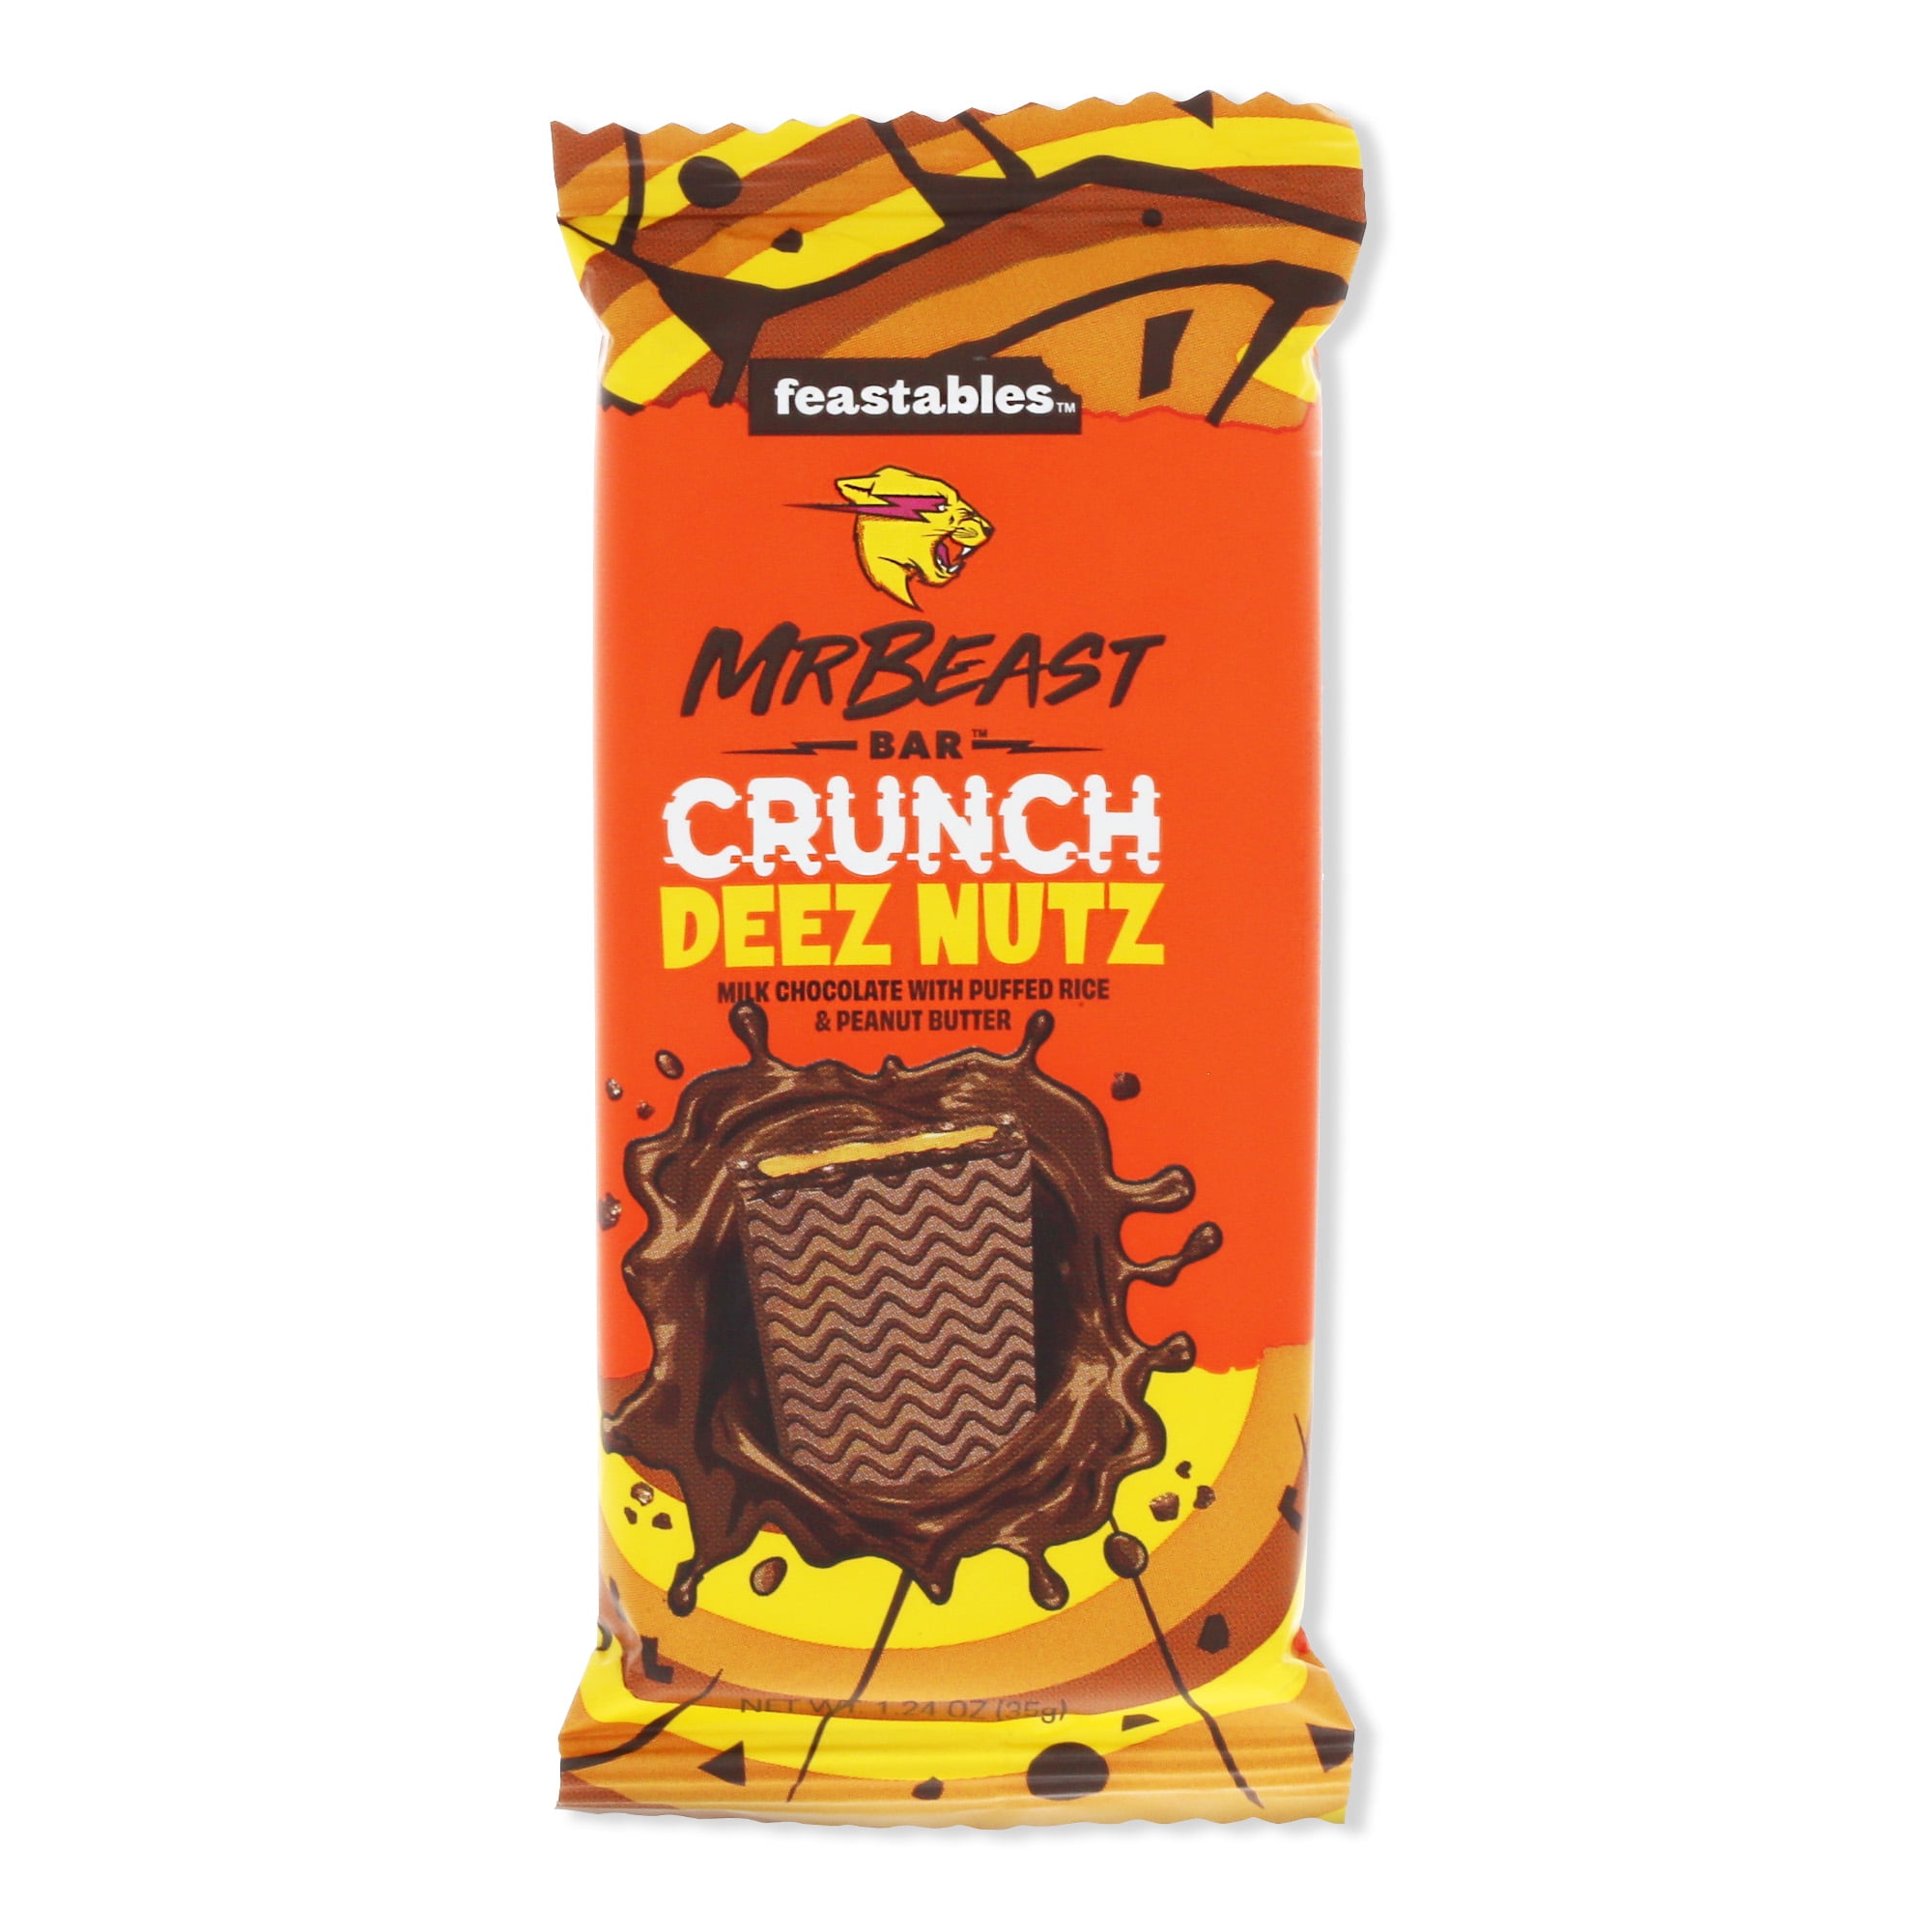 Feastables MrBeast Deez Nutz Peanut Butter Milk Chocolate Bar 2.1